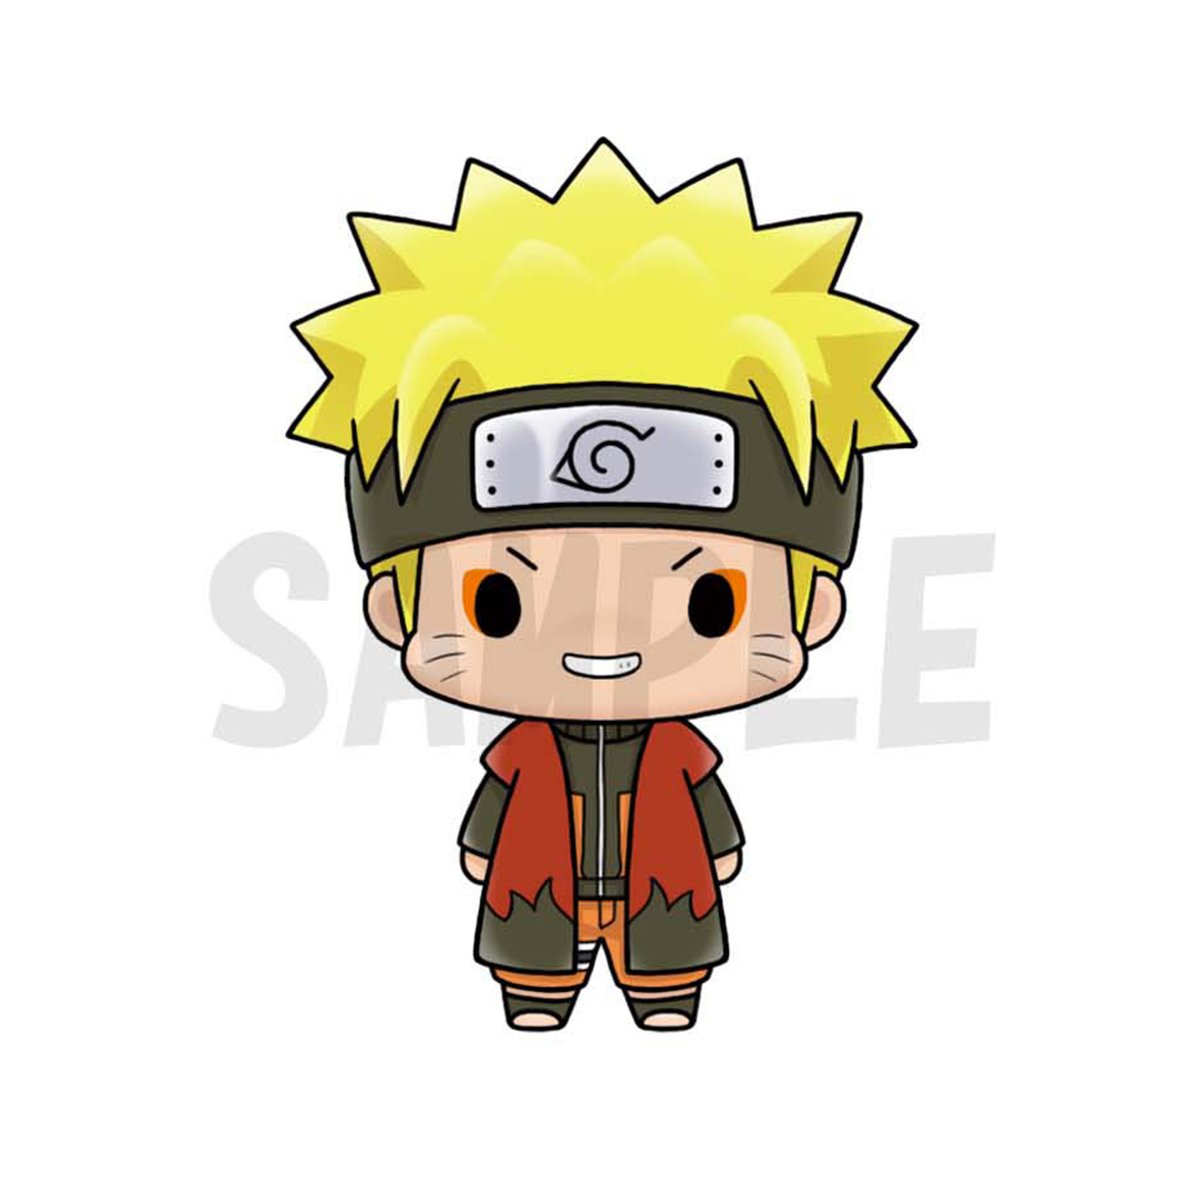 Lần đầu tiên được bán tại cửa hàng Crunchyroll, bộ búp bê Naruto Chibi Chokorin Vol 2 sẽ thỏa mãn mọi cơn khát cho các fan của Naruto. Hãy xem qua để chọn lựa cho mình bộ sưu tập búp bê Naruto phù hợp và dễ thương nhất nhé!